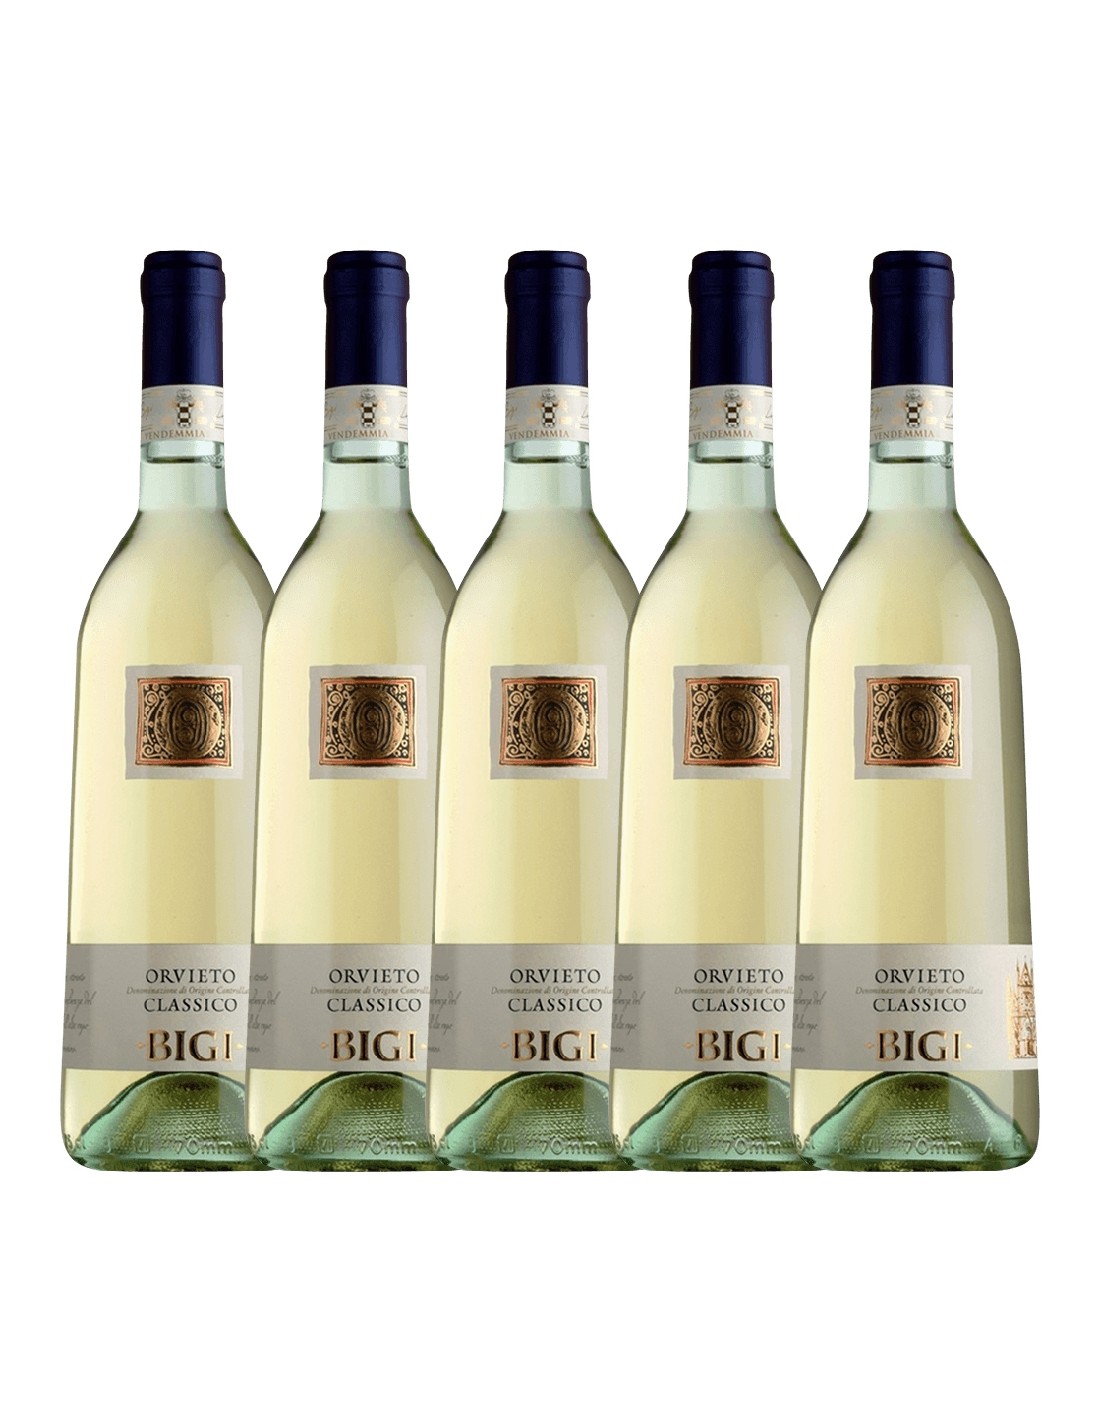 Pachet 5 sticle Vin alb, Bigi Orvieto, 0.75L, 12.5% alc., Italia